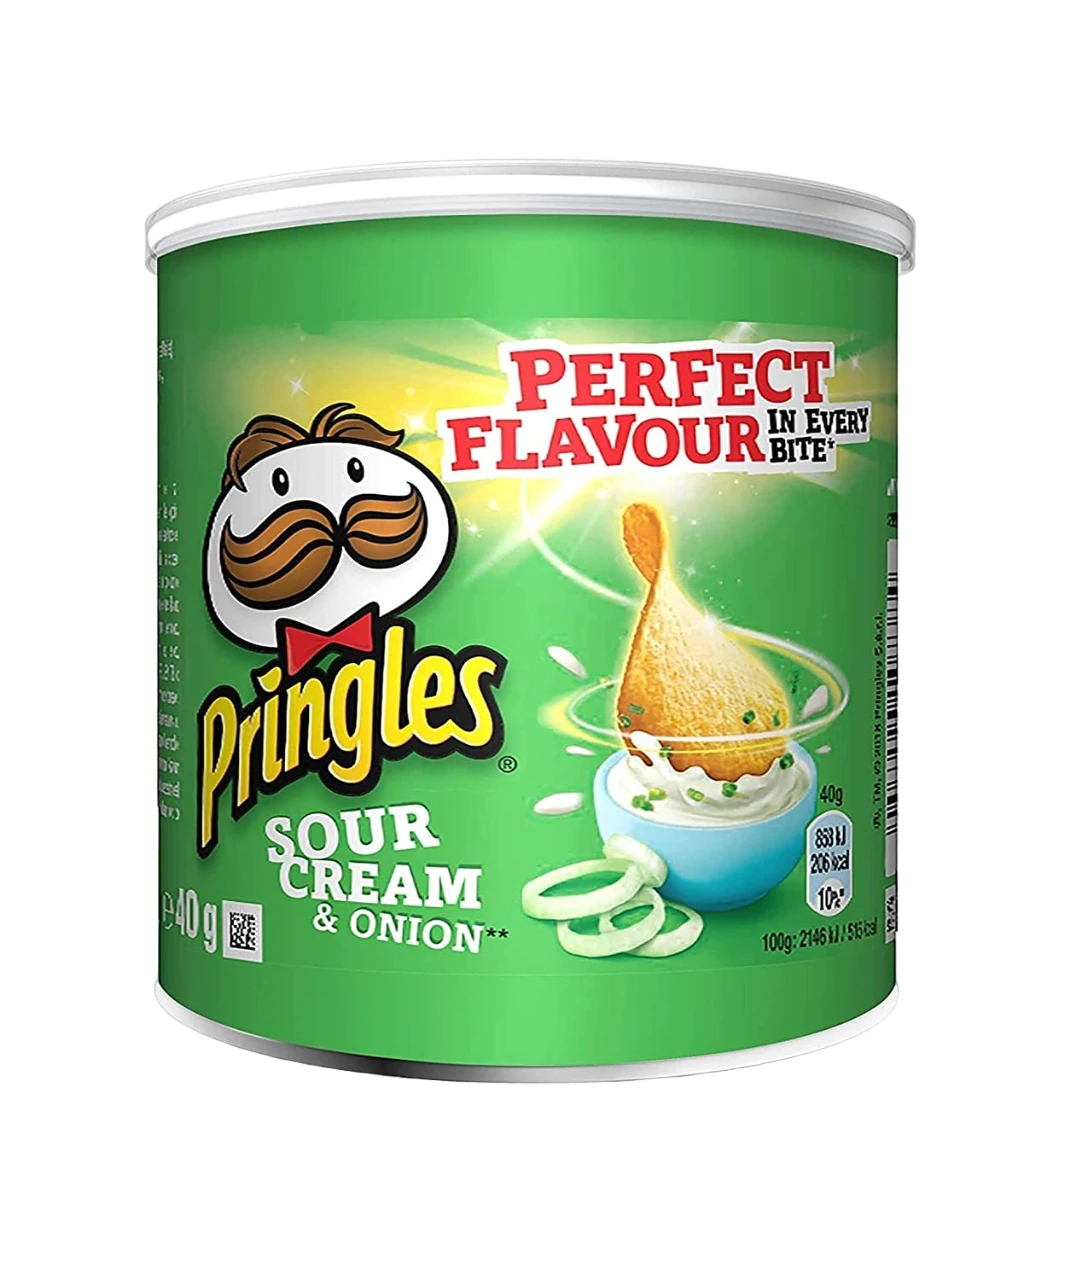 Pringles Sour Cream & Onion Pop & Go Potato Chips 40g